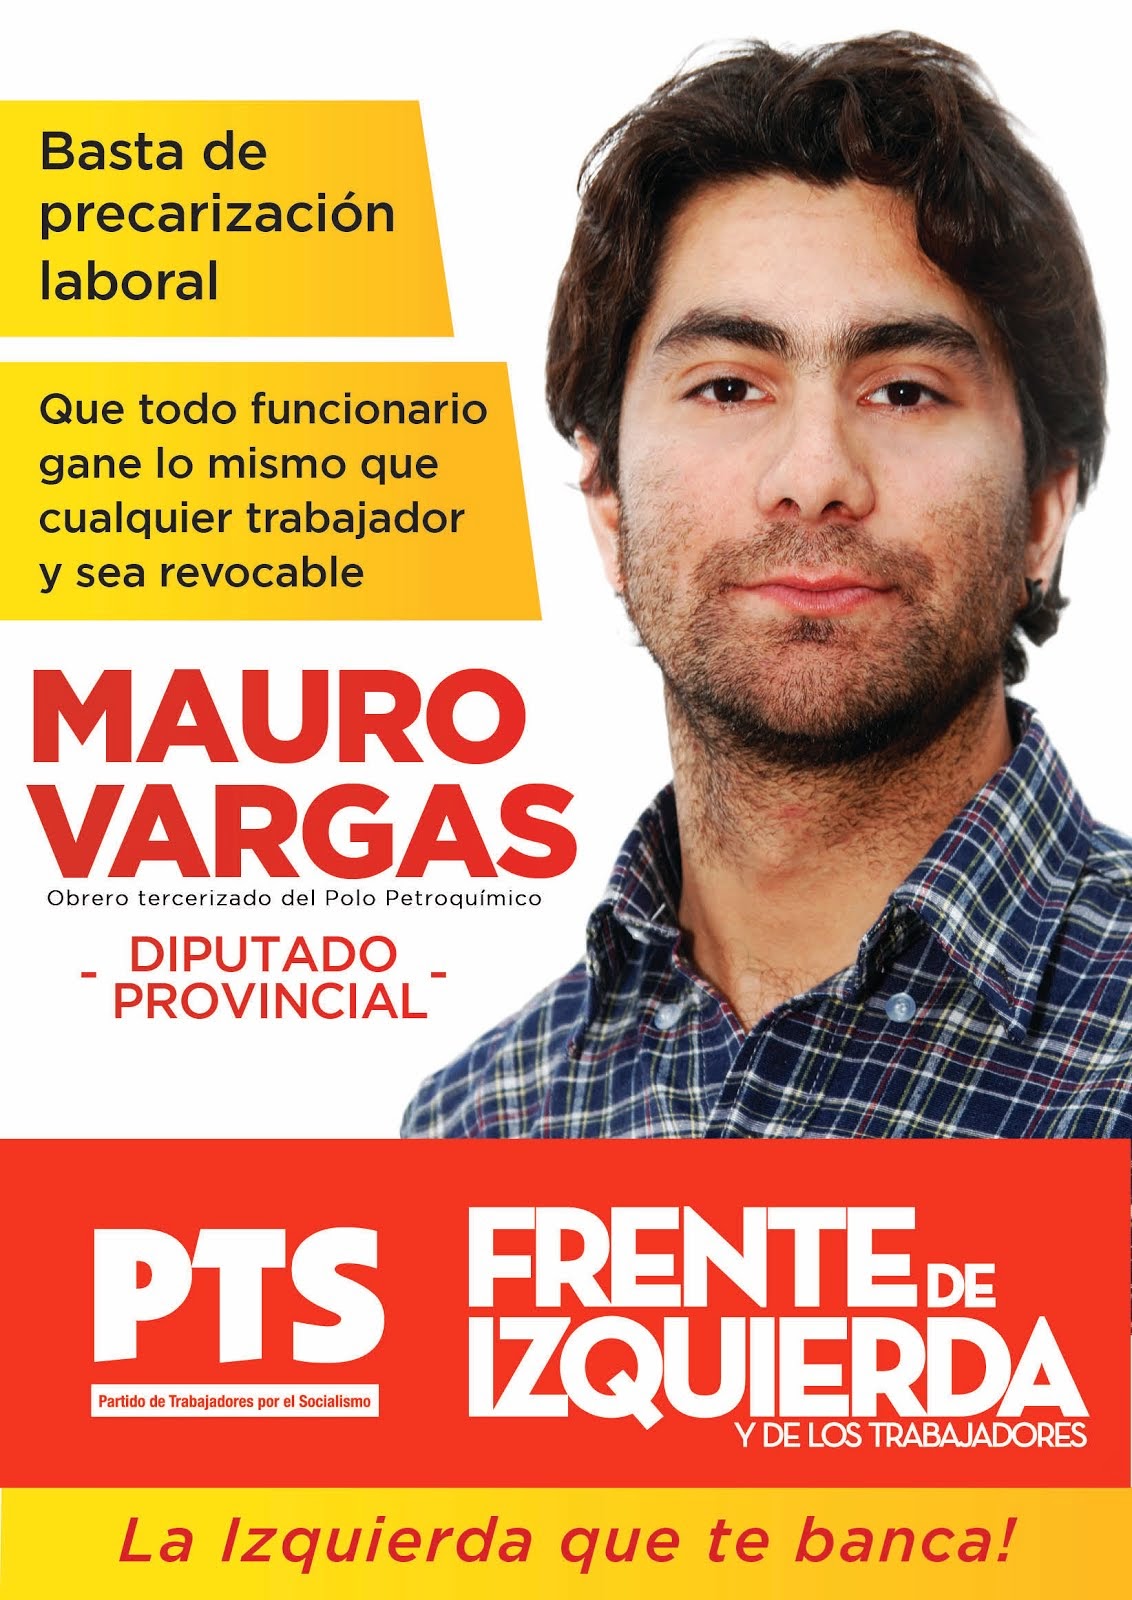 Mauro Vargas, candidato a Diputado Provincial